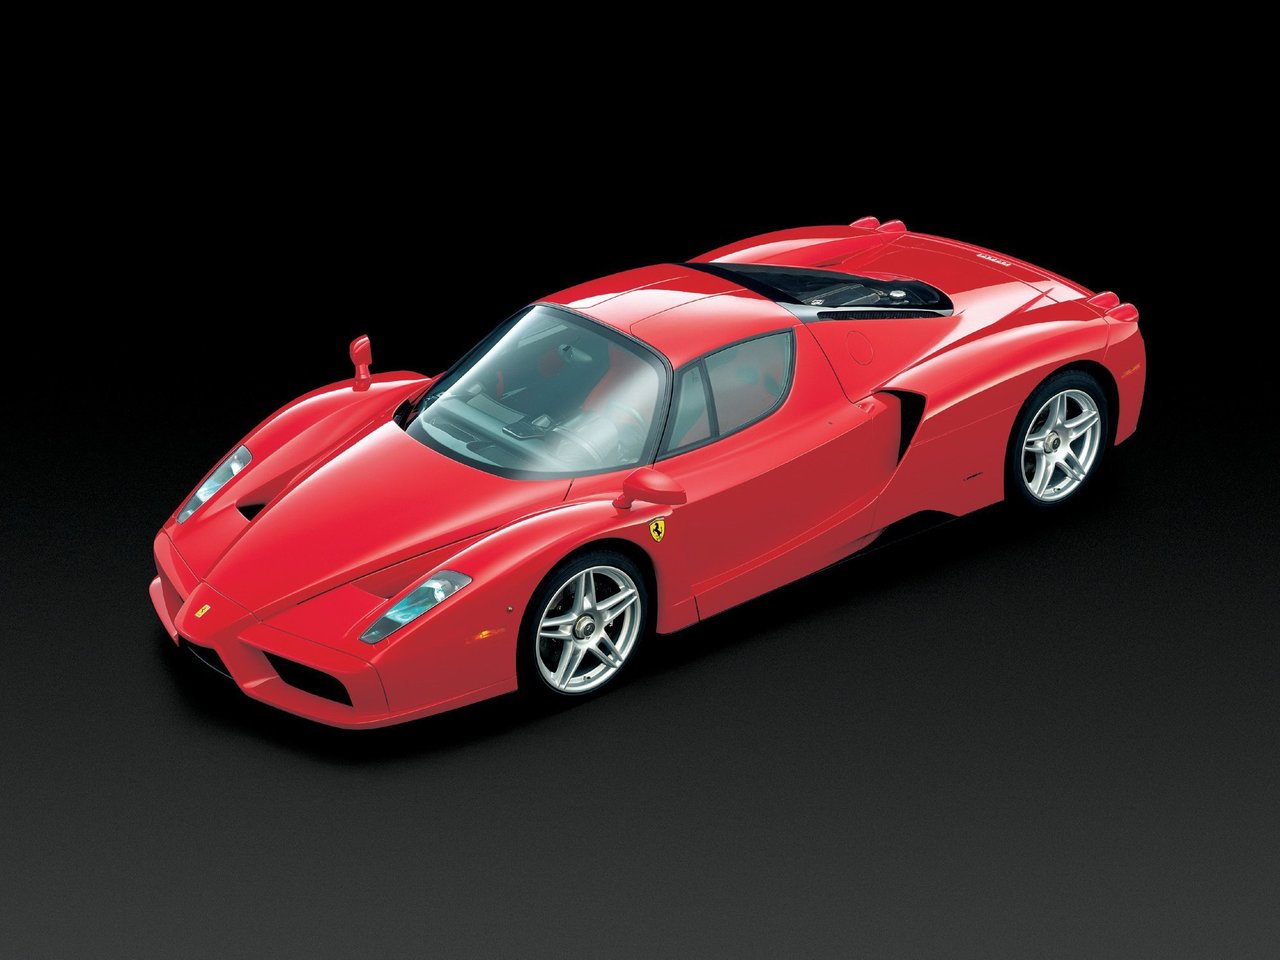 Расход газа одной комплектации купе Ferrari Enzo. Разница стоимости заправки газом и бензином. Автономный пробег до и после установки ГБО.